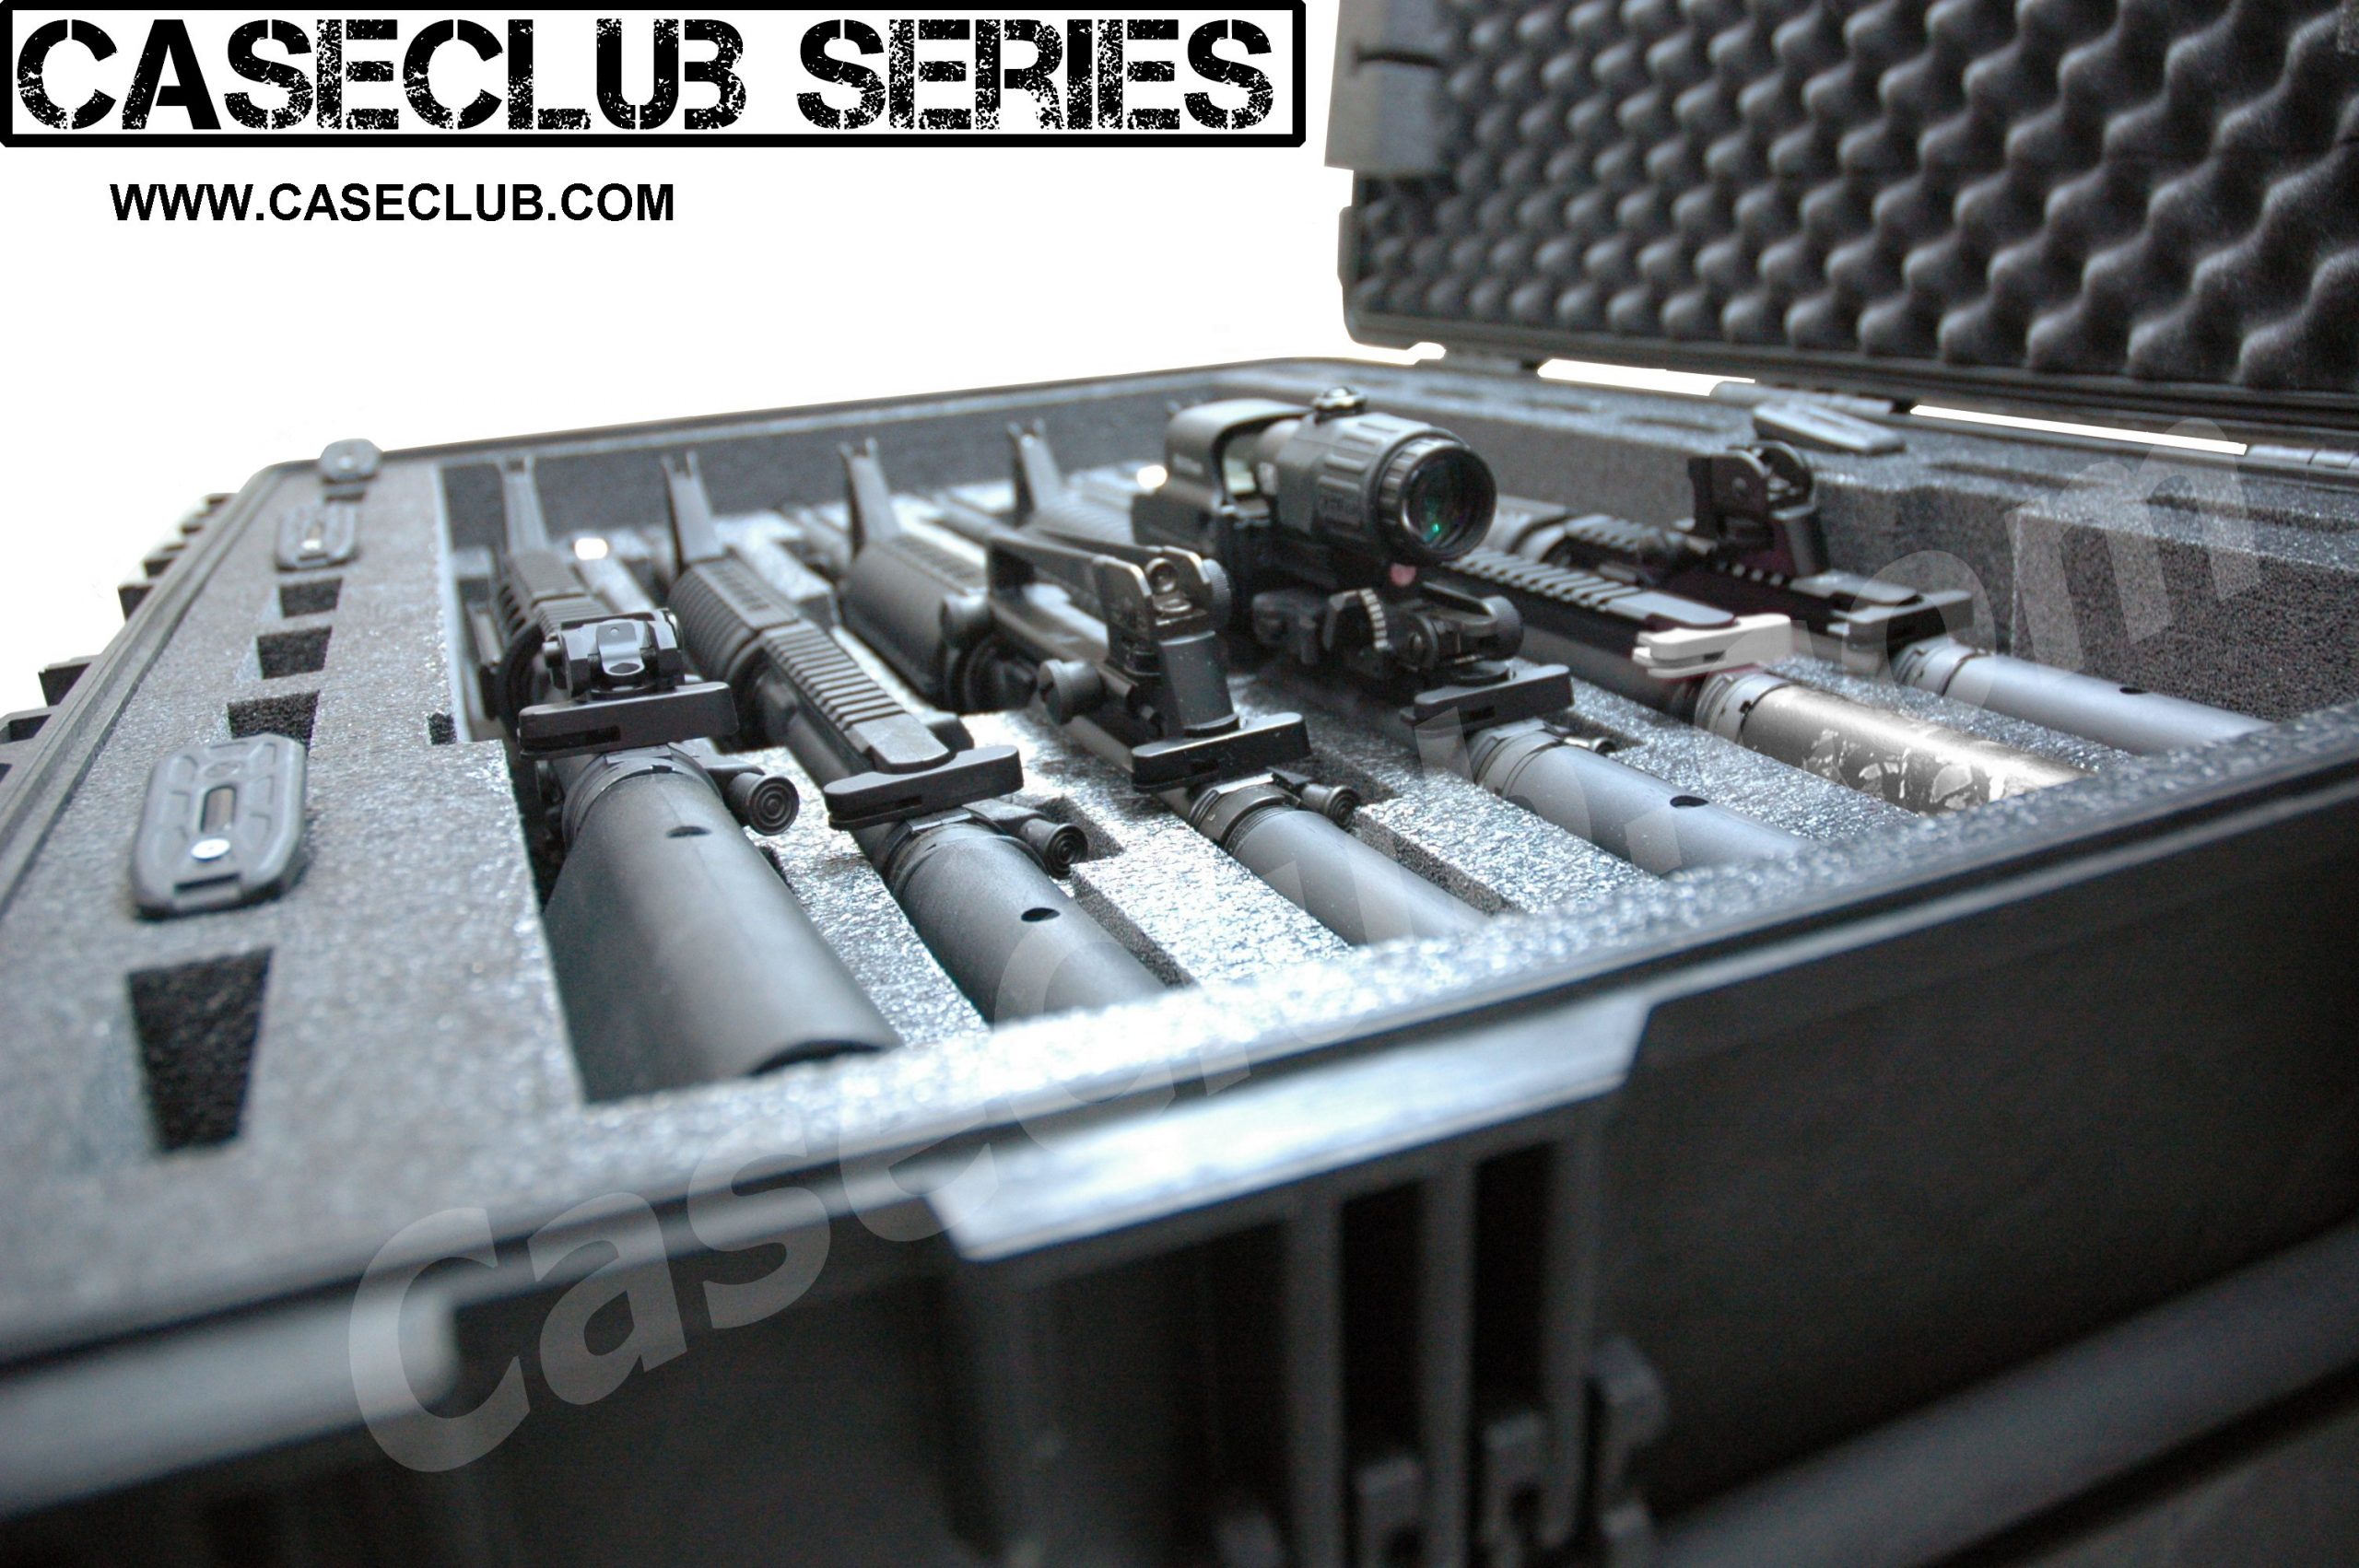 6 AR15 Rifle Case - Case Club